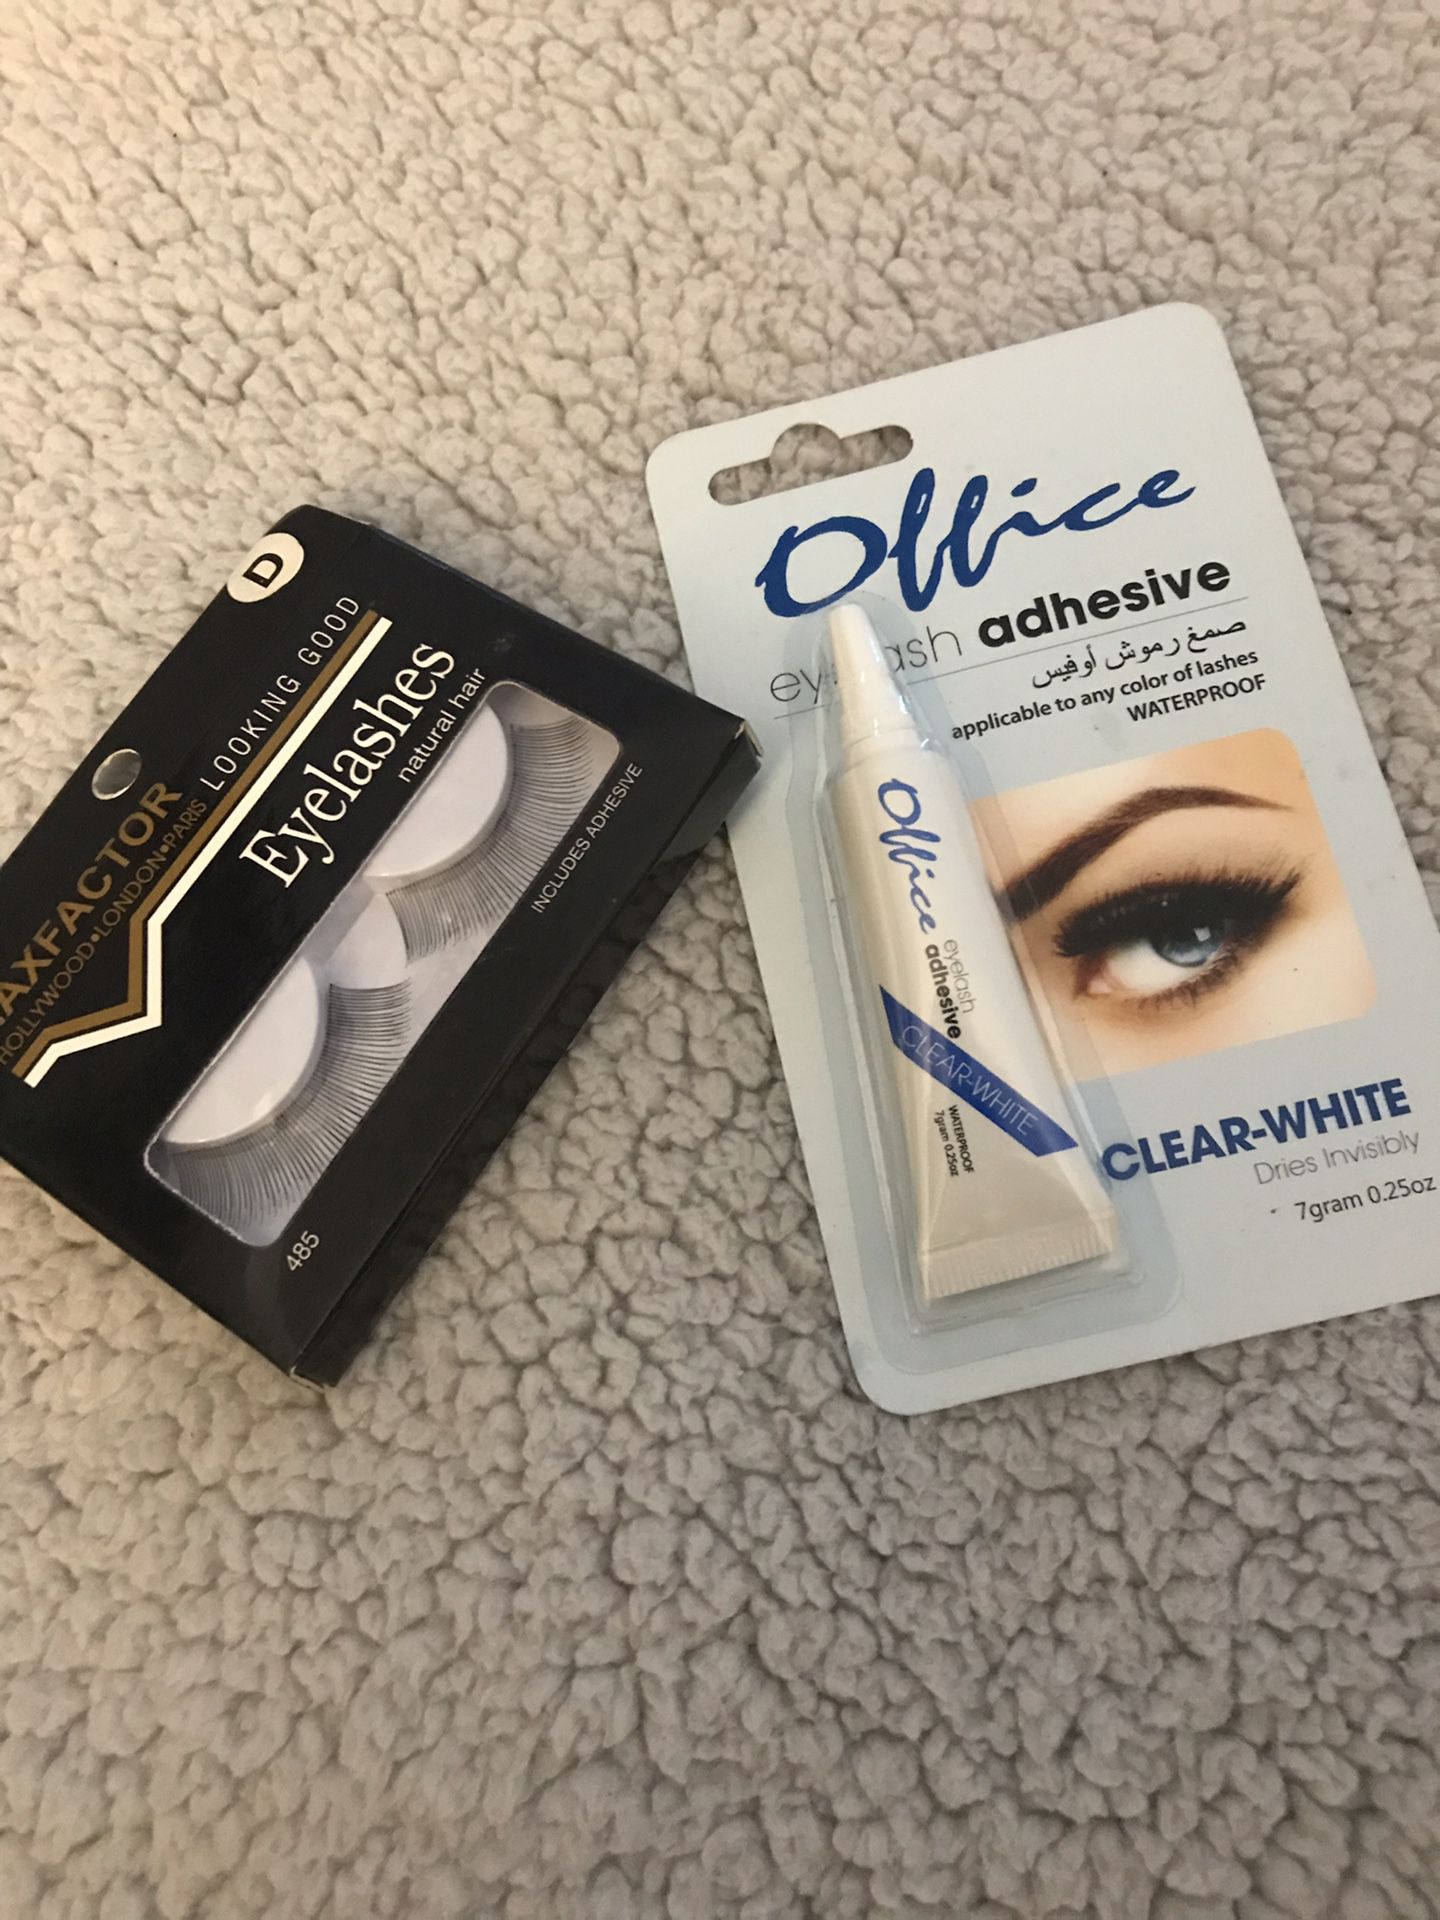 MAXFACTOR Eyelashes + Eyelash Adhesive